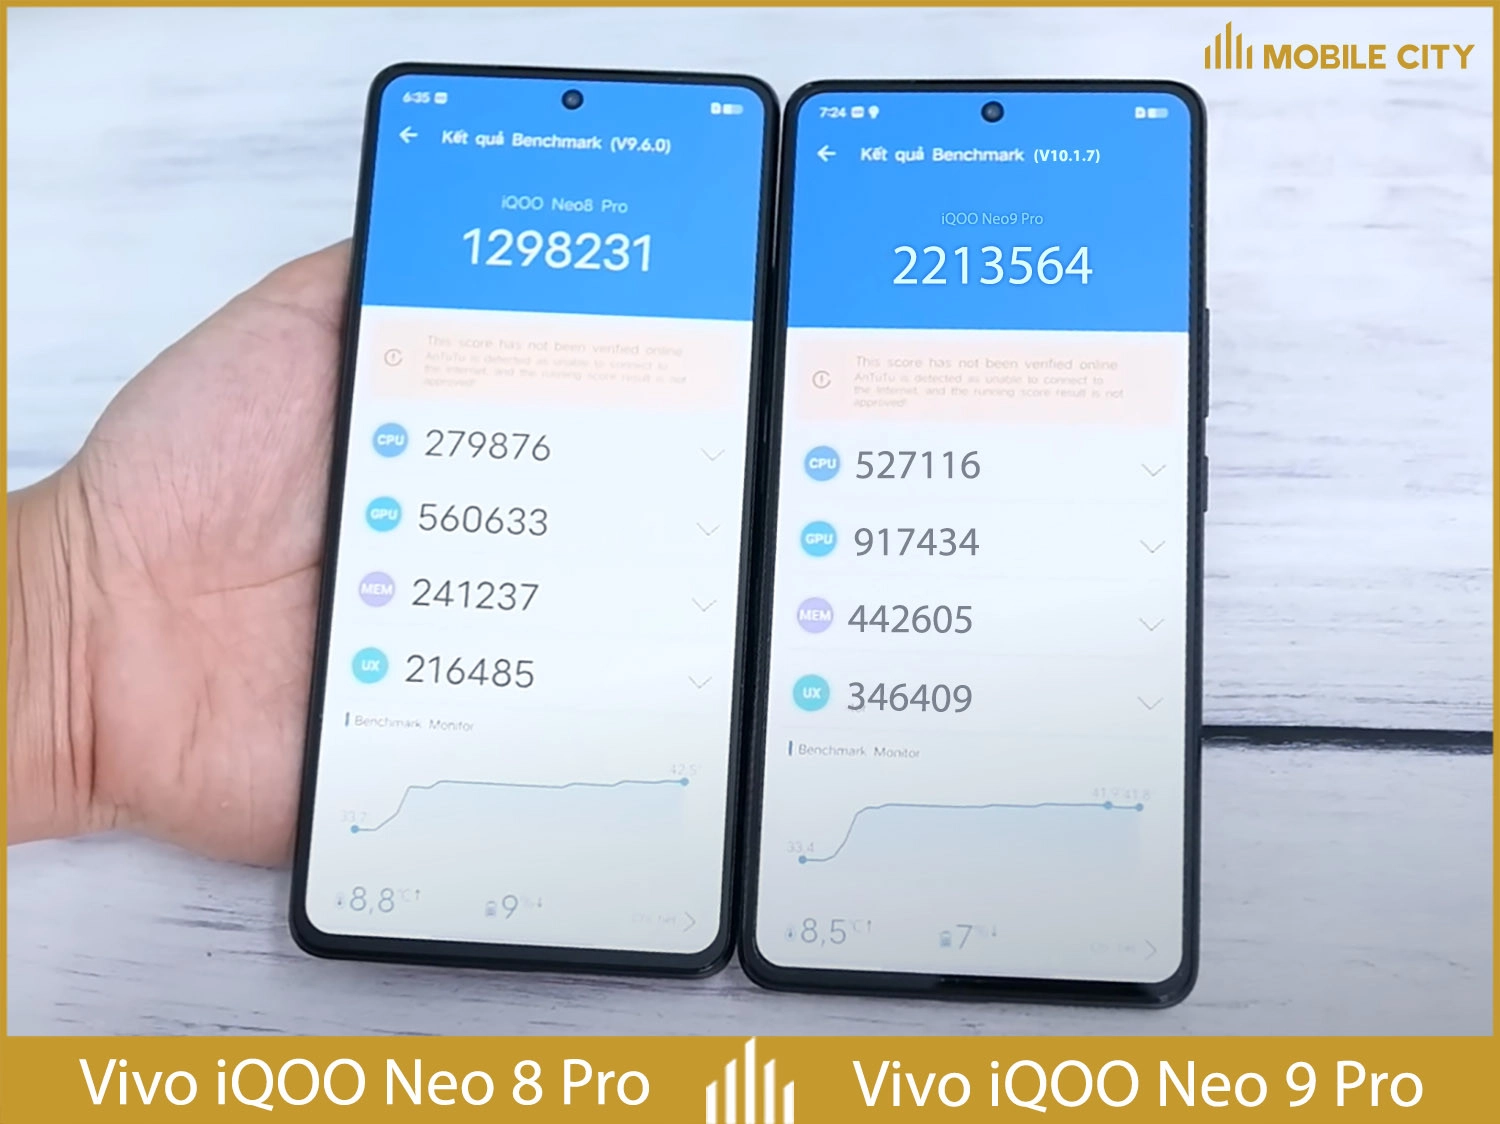  vivo-iqoo-neo-9-pro-5g-so-sanh-004